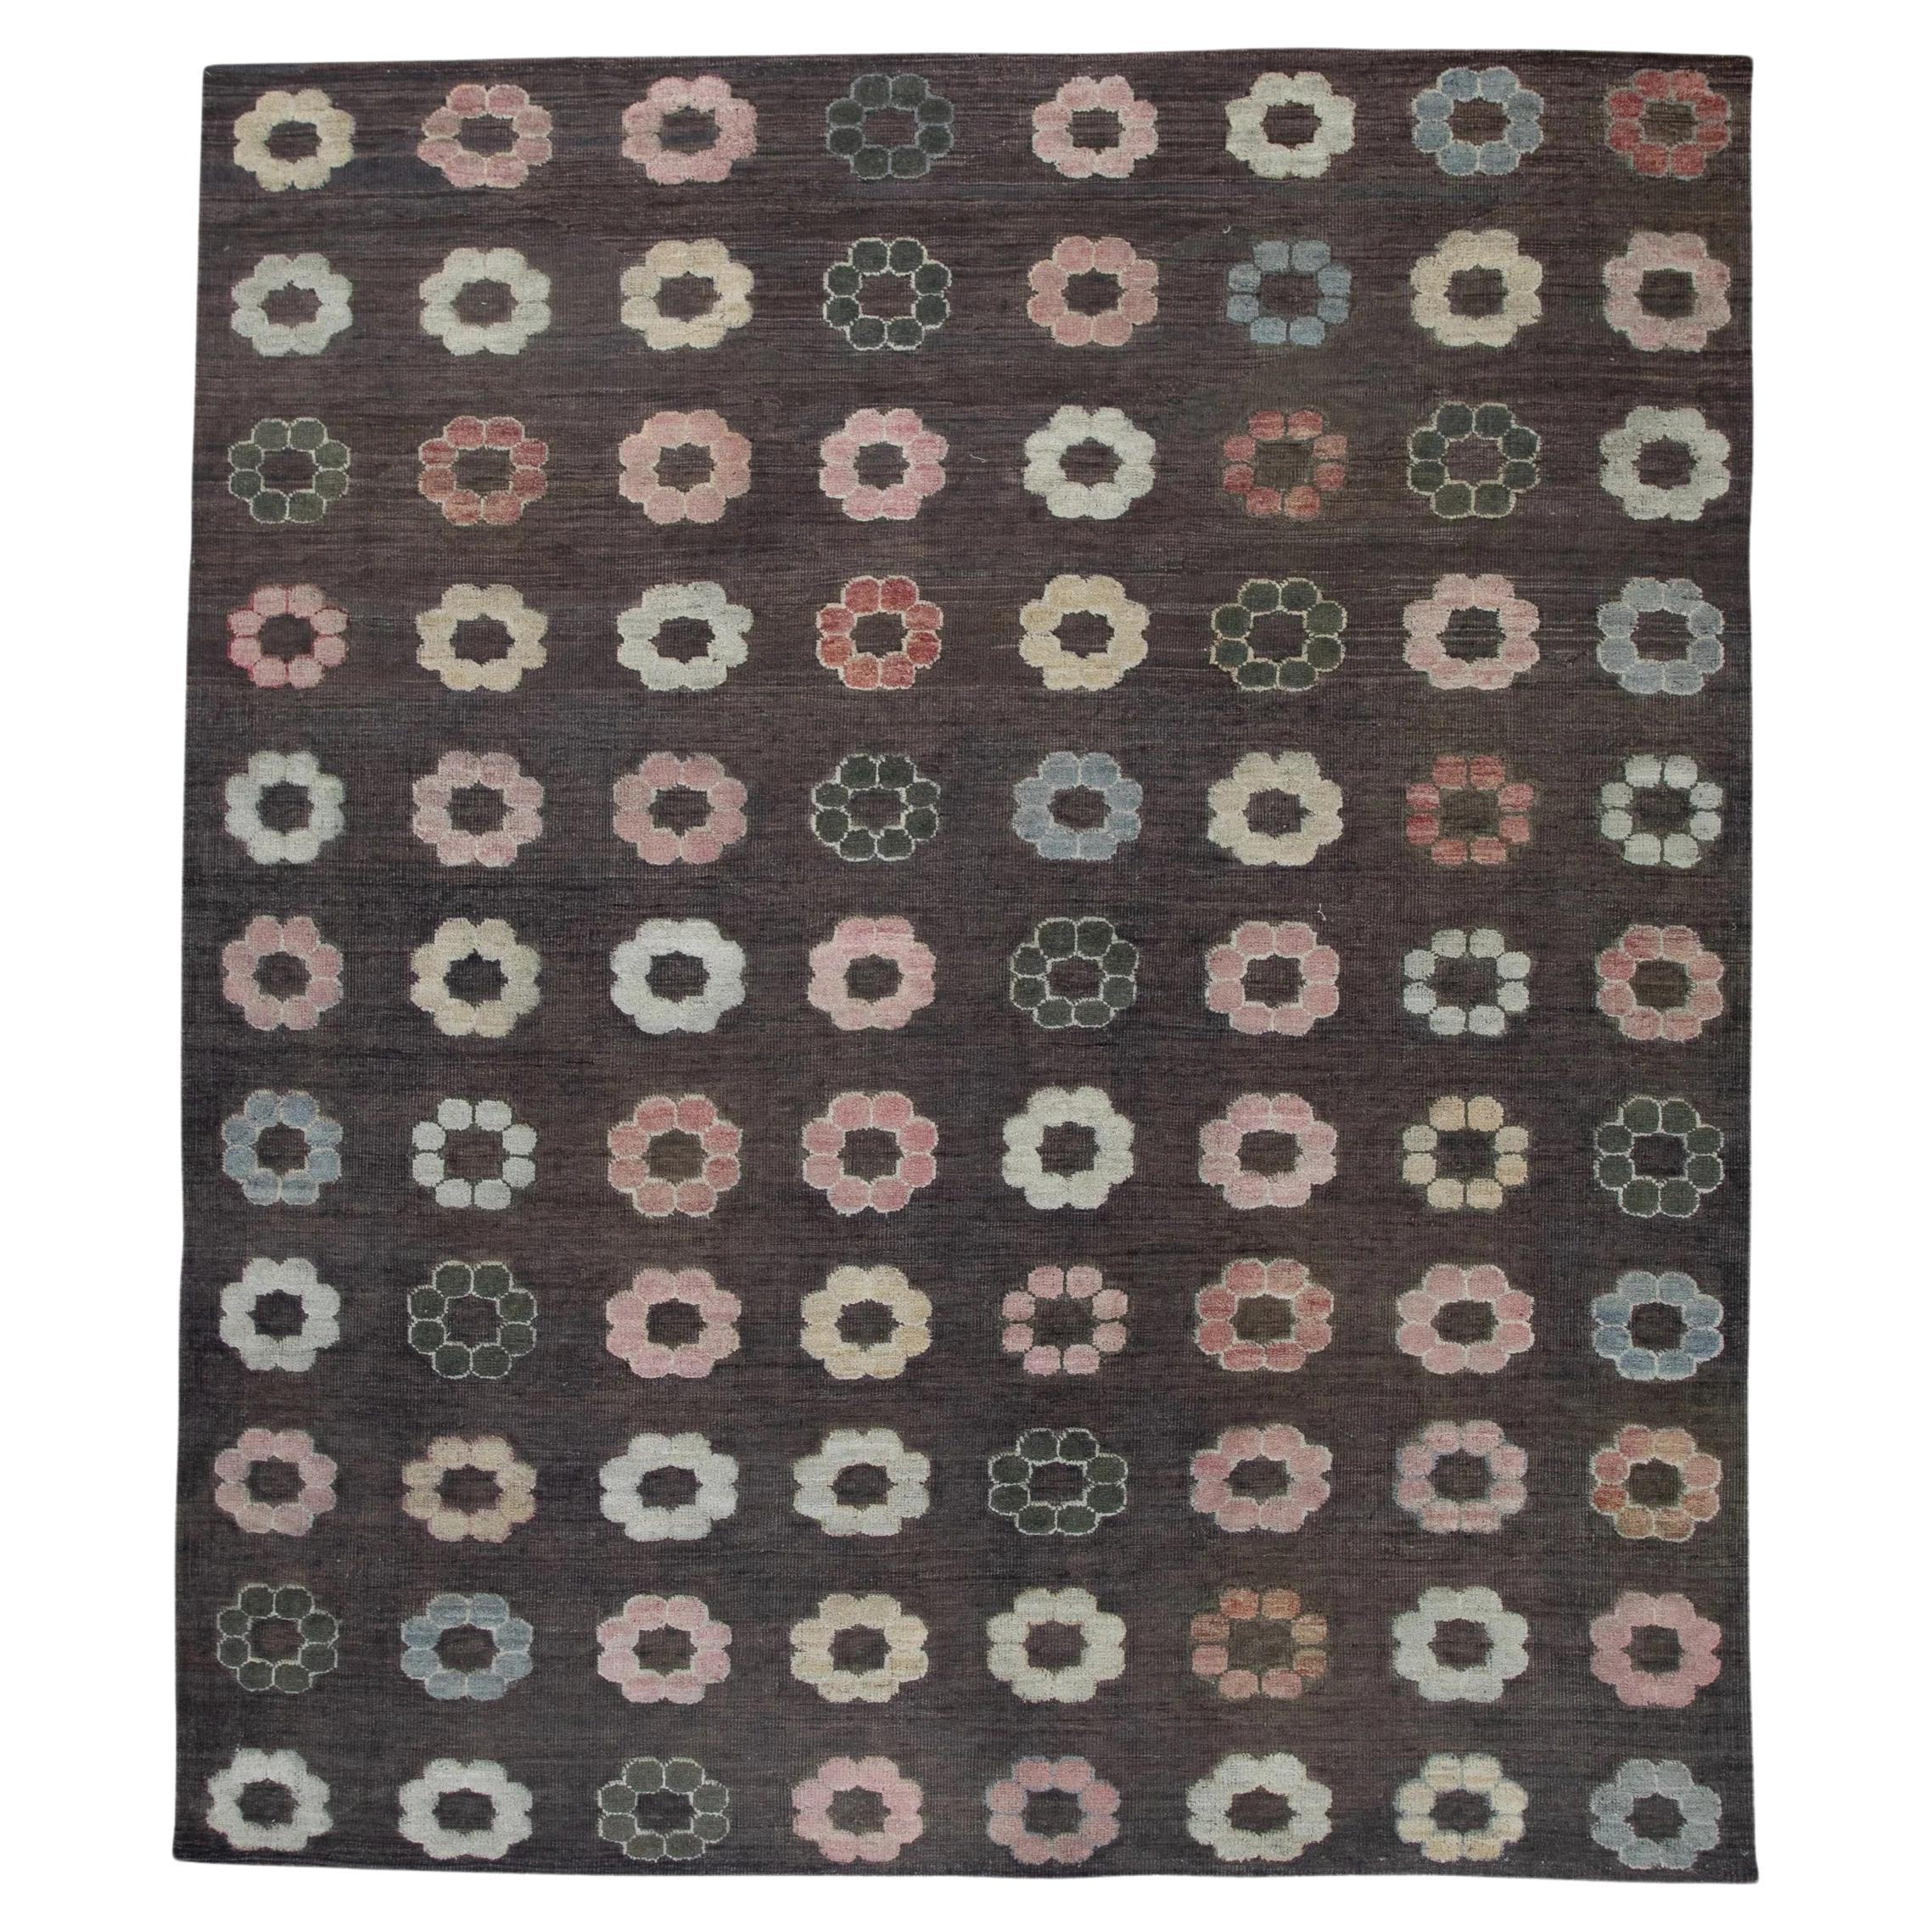 Brown Flatweave Handmade Wool Rug in Pink Floral Pattern 8'8" X 10' For Sale